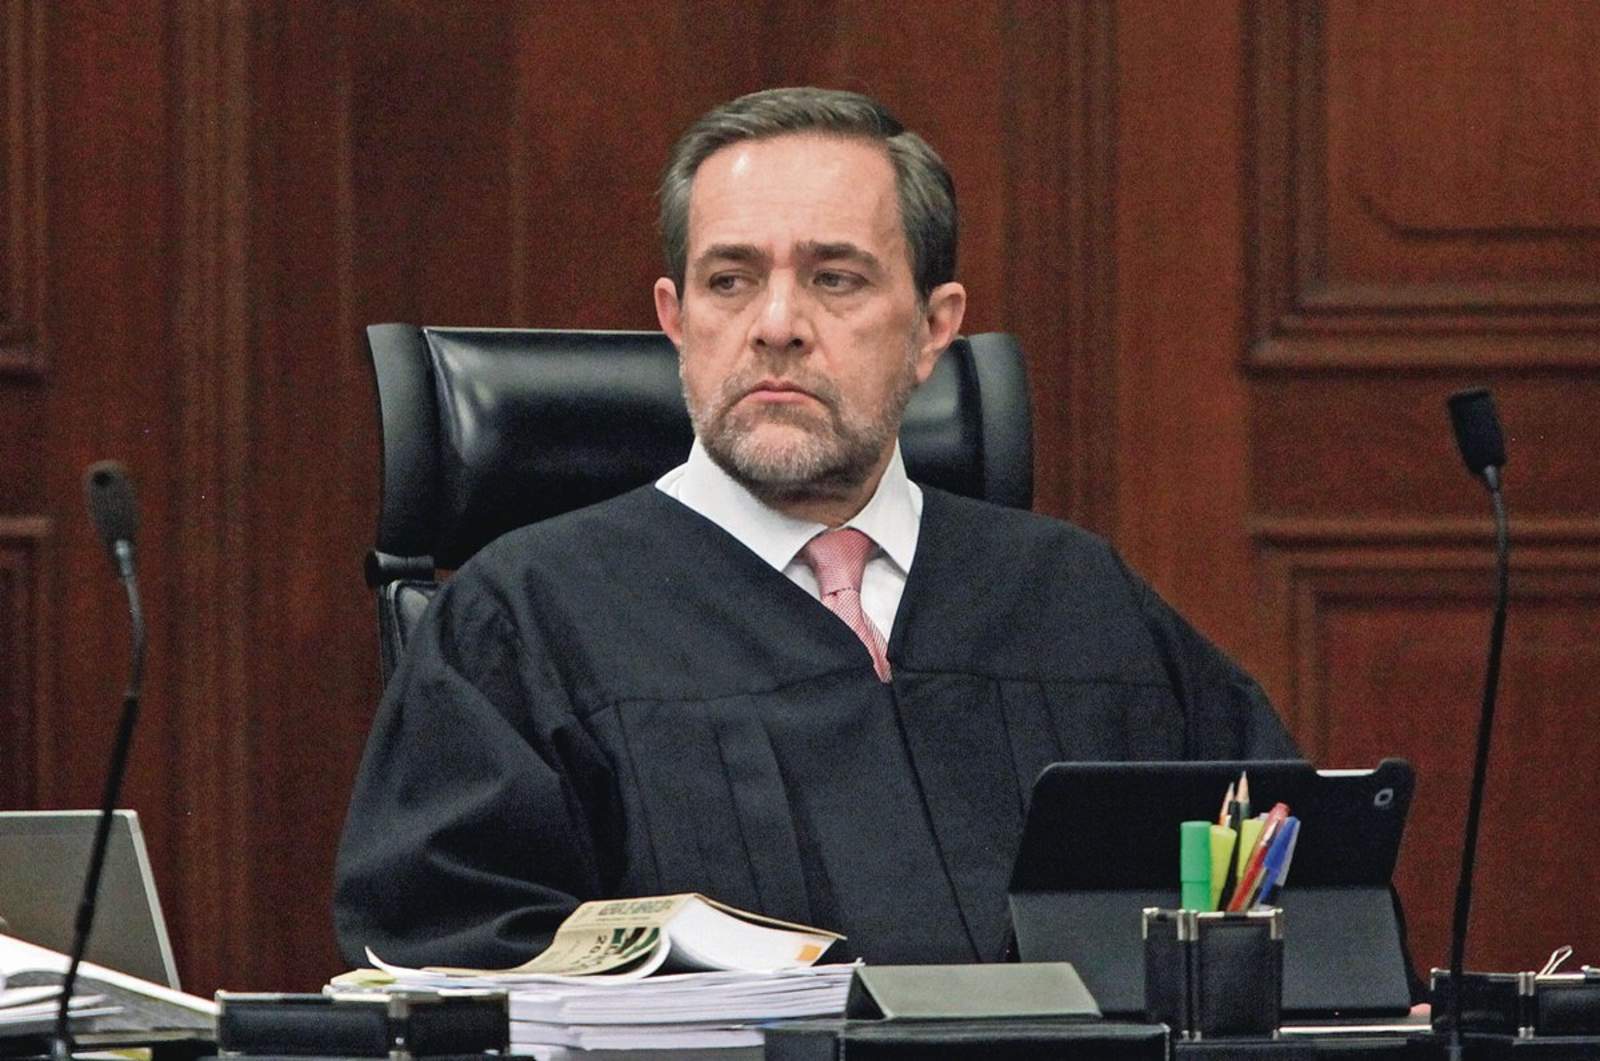 El ministro Jorge Mario Pardo Rebolledo aseguró que la mejor defensa de los jueces es su prudencia. (ESPECIAL) 